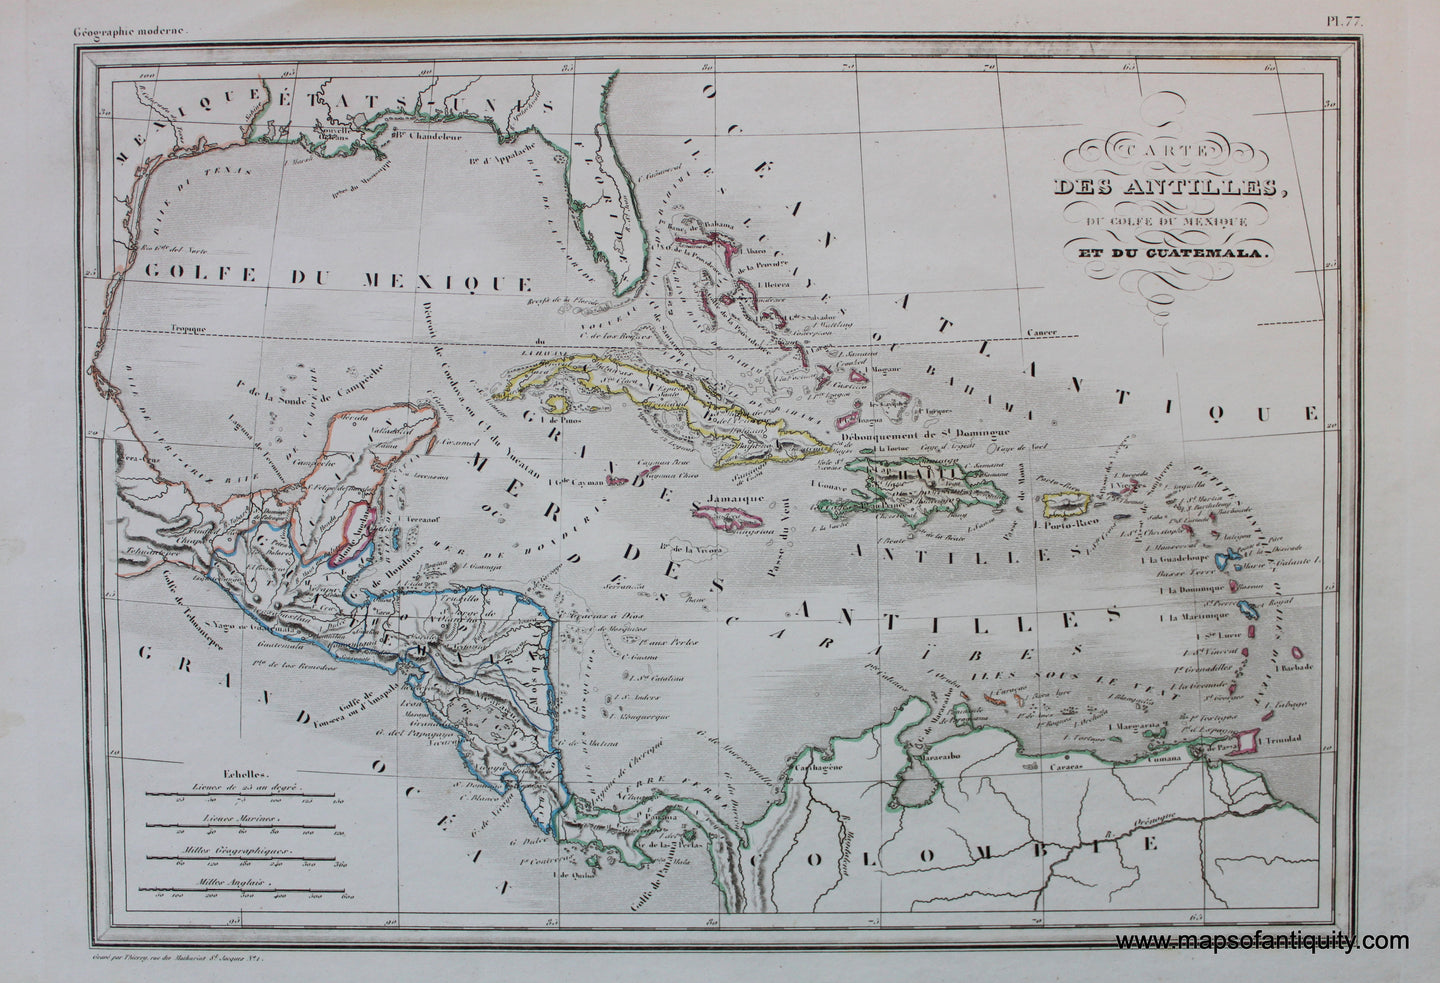 Antique-Hand-Colored-Map-Carte-Des-Antilles-du-Golfe-du-Mexique-et-du-Guatemala-Caribbean-&Latin-America-Central-America-1846-M.-Malte-Brun-Maps-Of-Antiquity